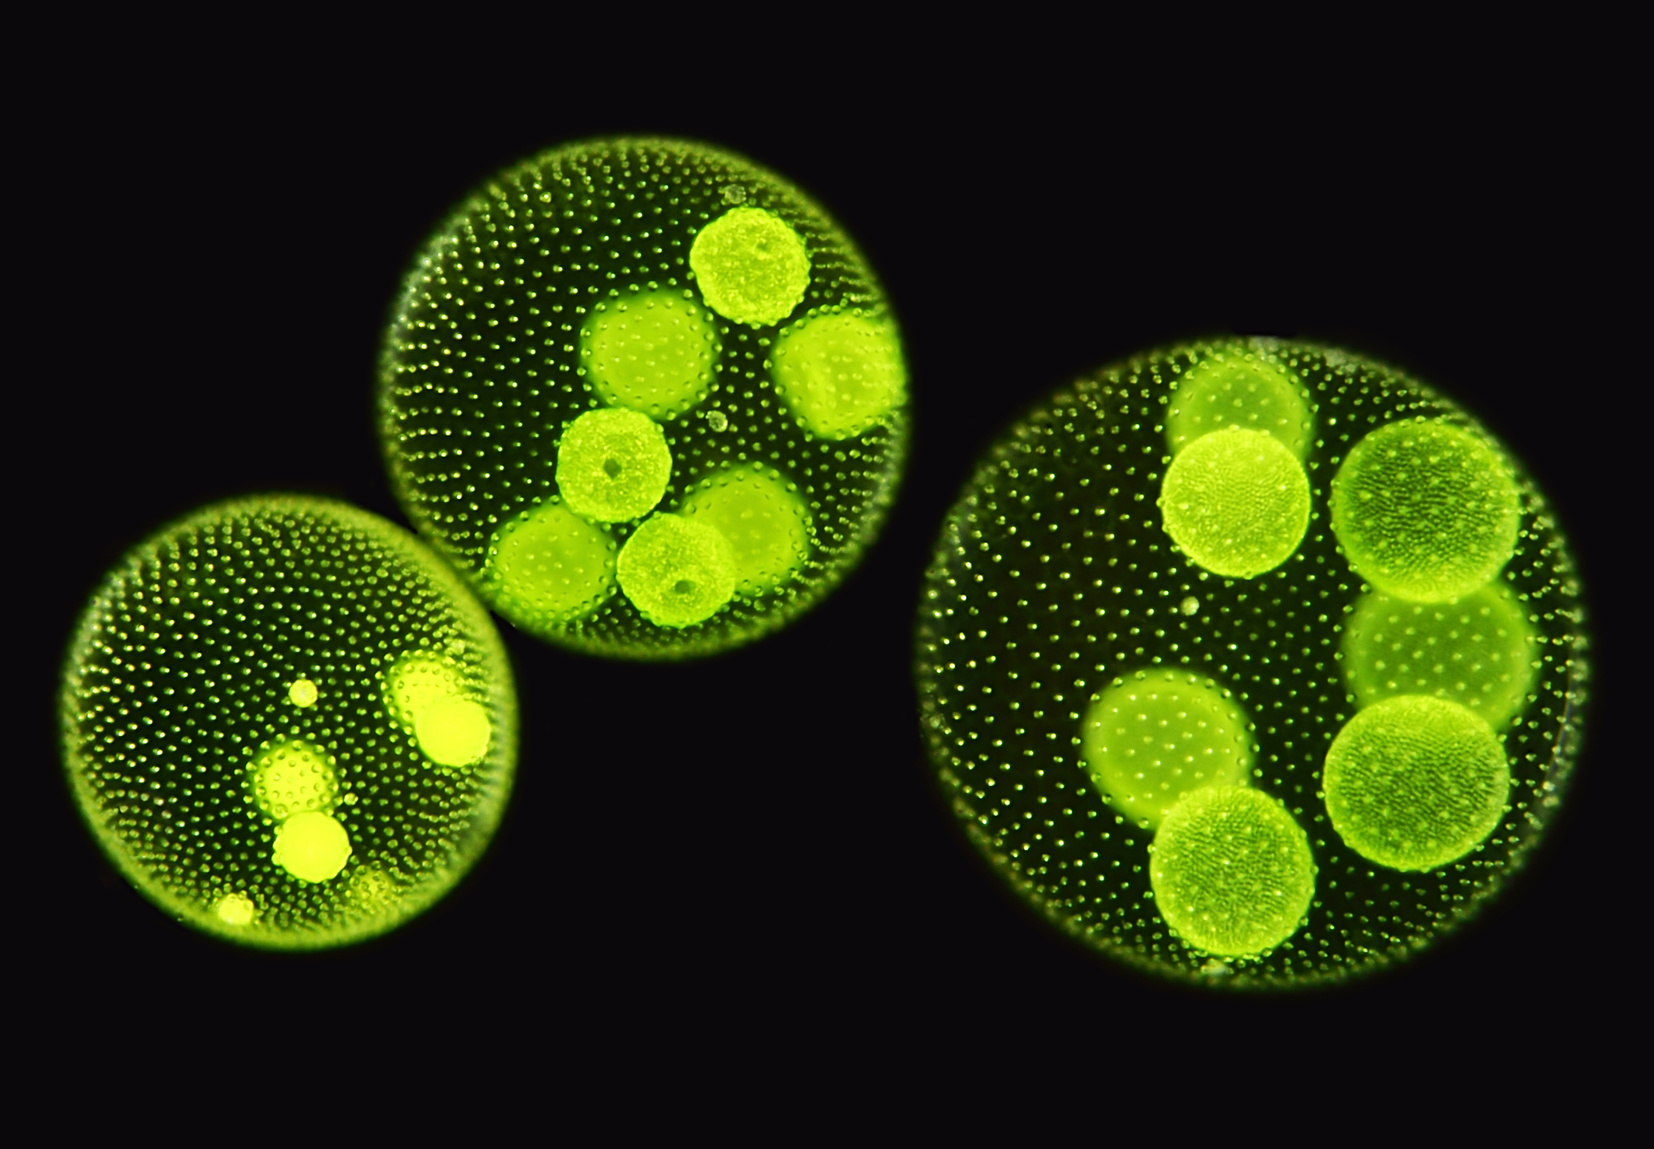 C. reinhardtii évolue en être multicellulaire pour échapper à l’appétit d’une paramécie. © micro_photo, Fotolia